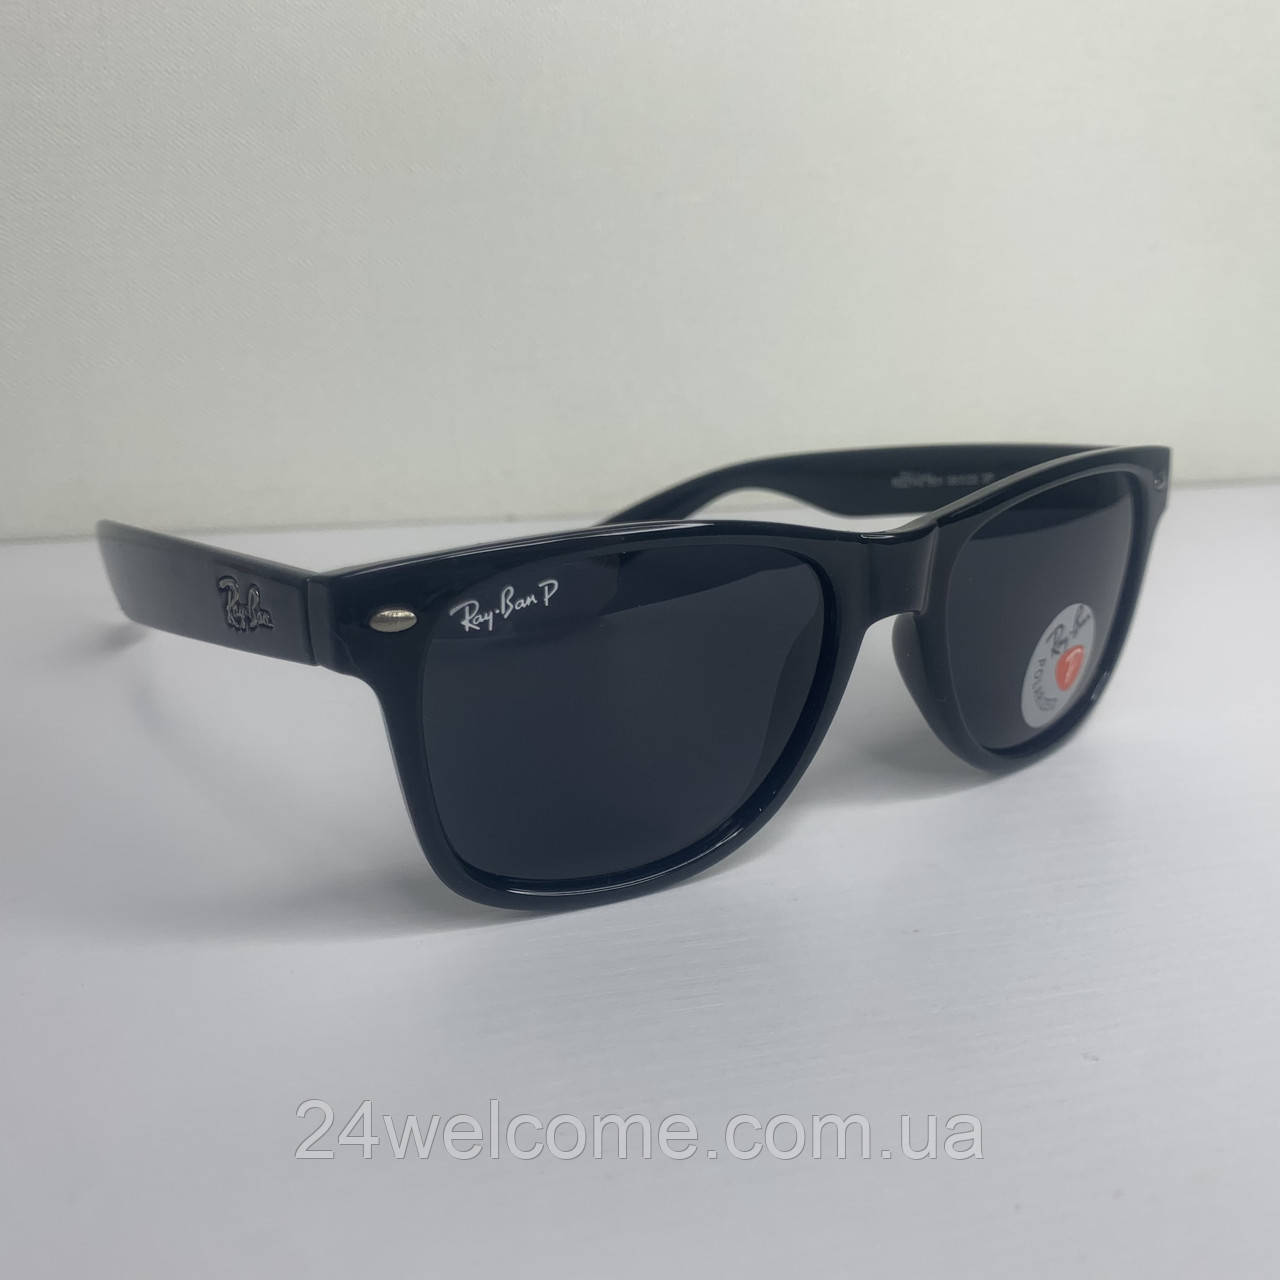 Сонцезахисні окуляри Полароїд Ray Ban 2140 Wayfarer чорний глянець